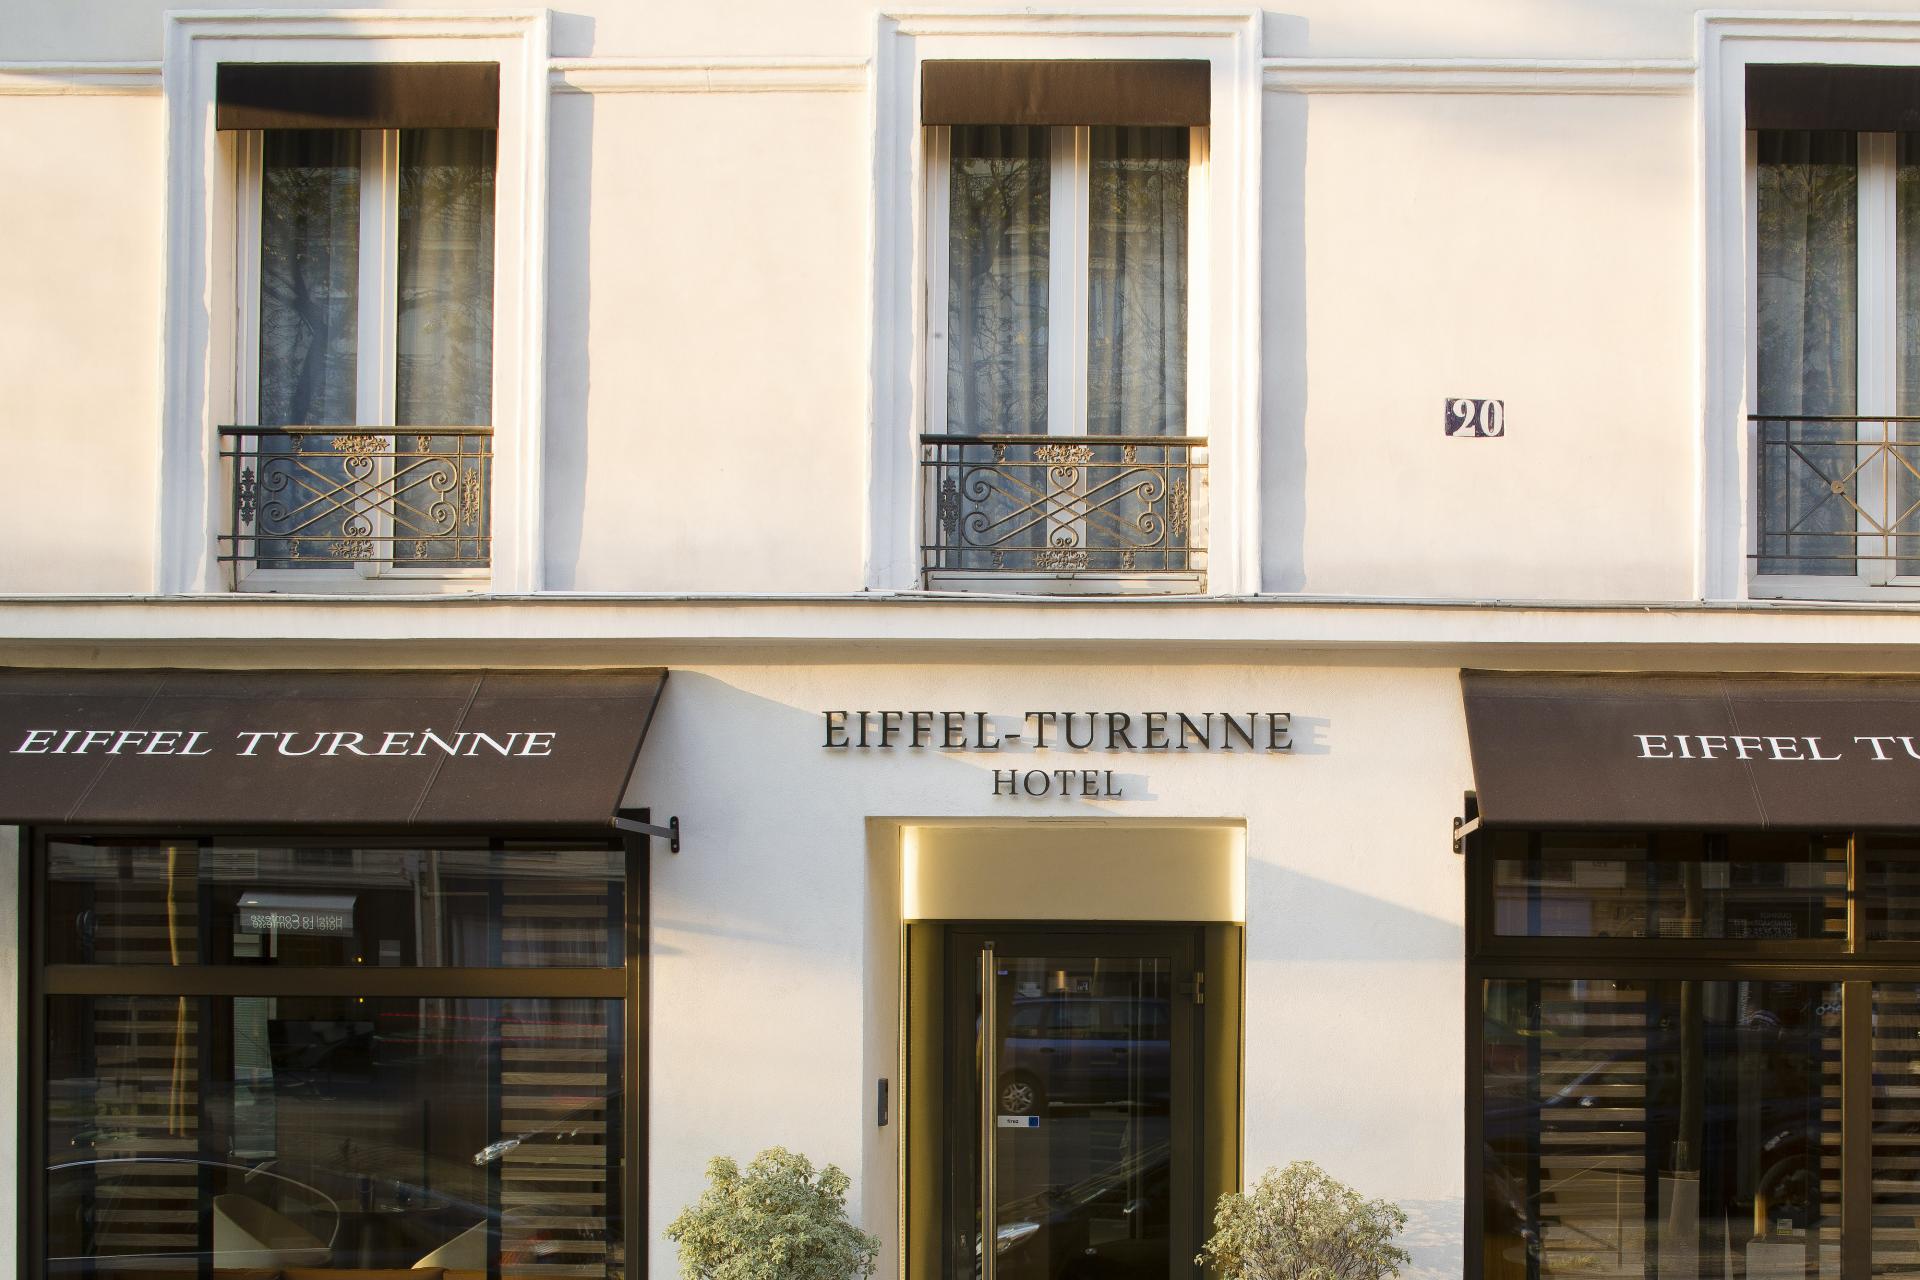 Hotel Eiffel Turenne - Hotel